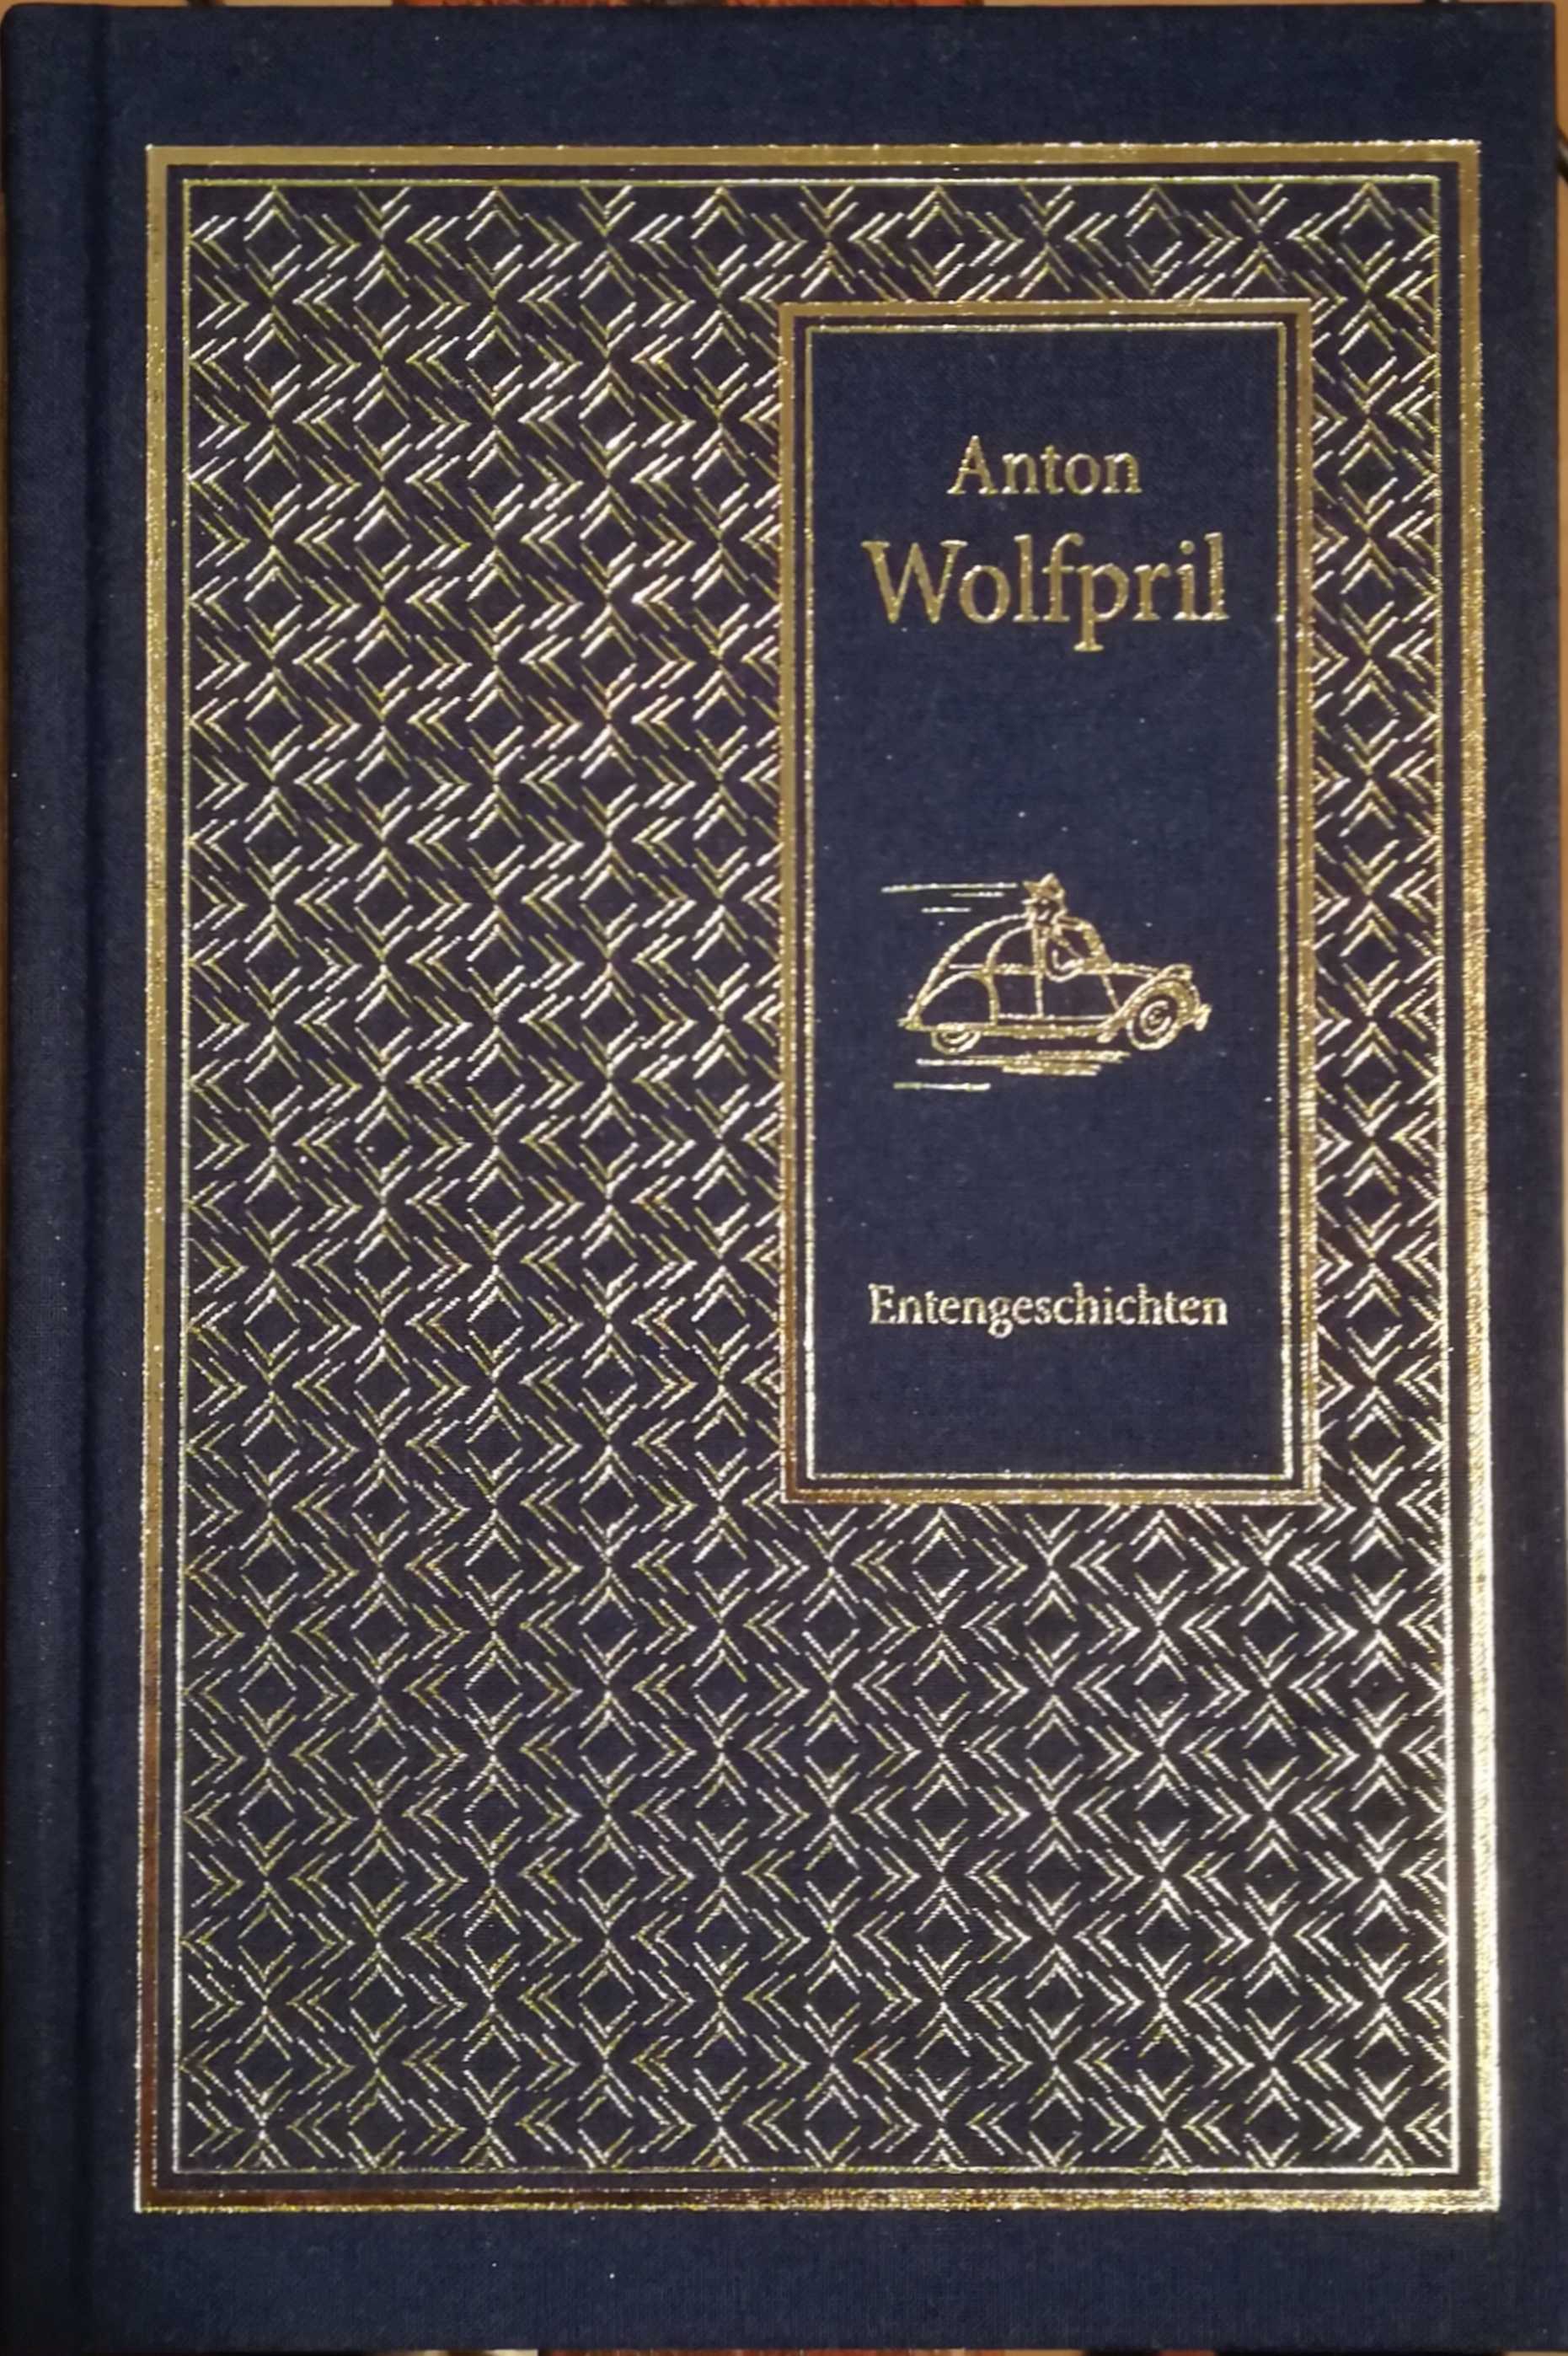 Anton Wolfpril Entengeschichten geprägter Leinenumschlag